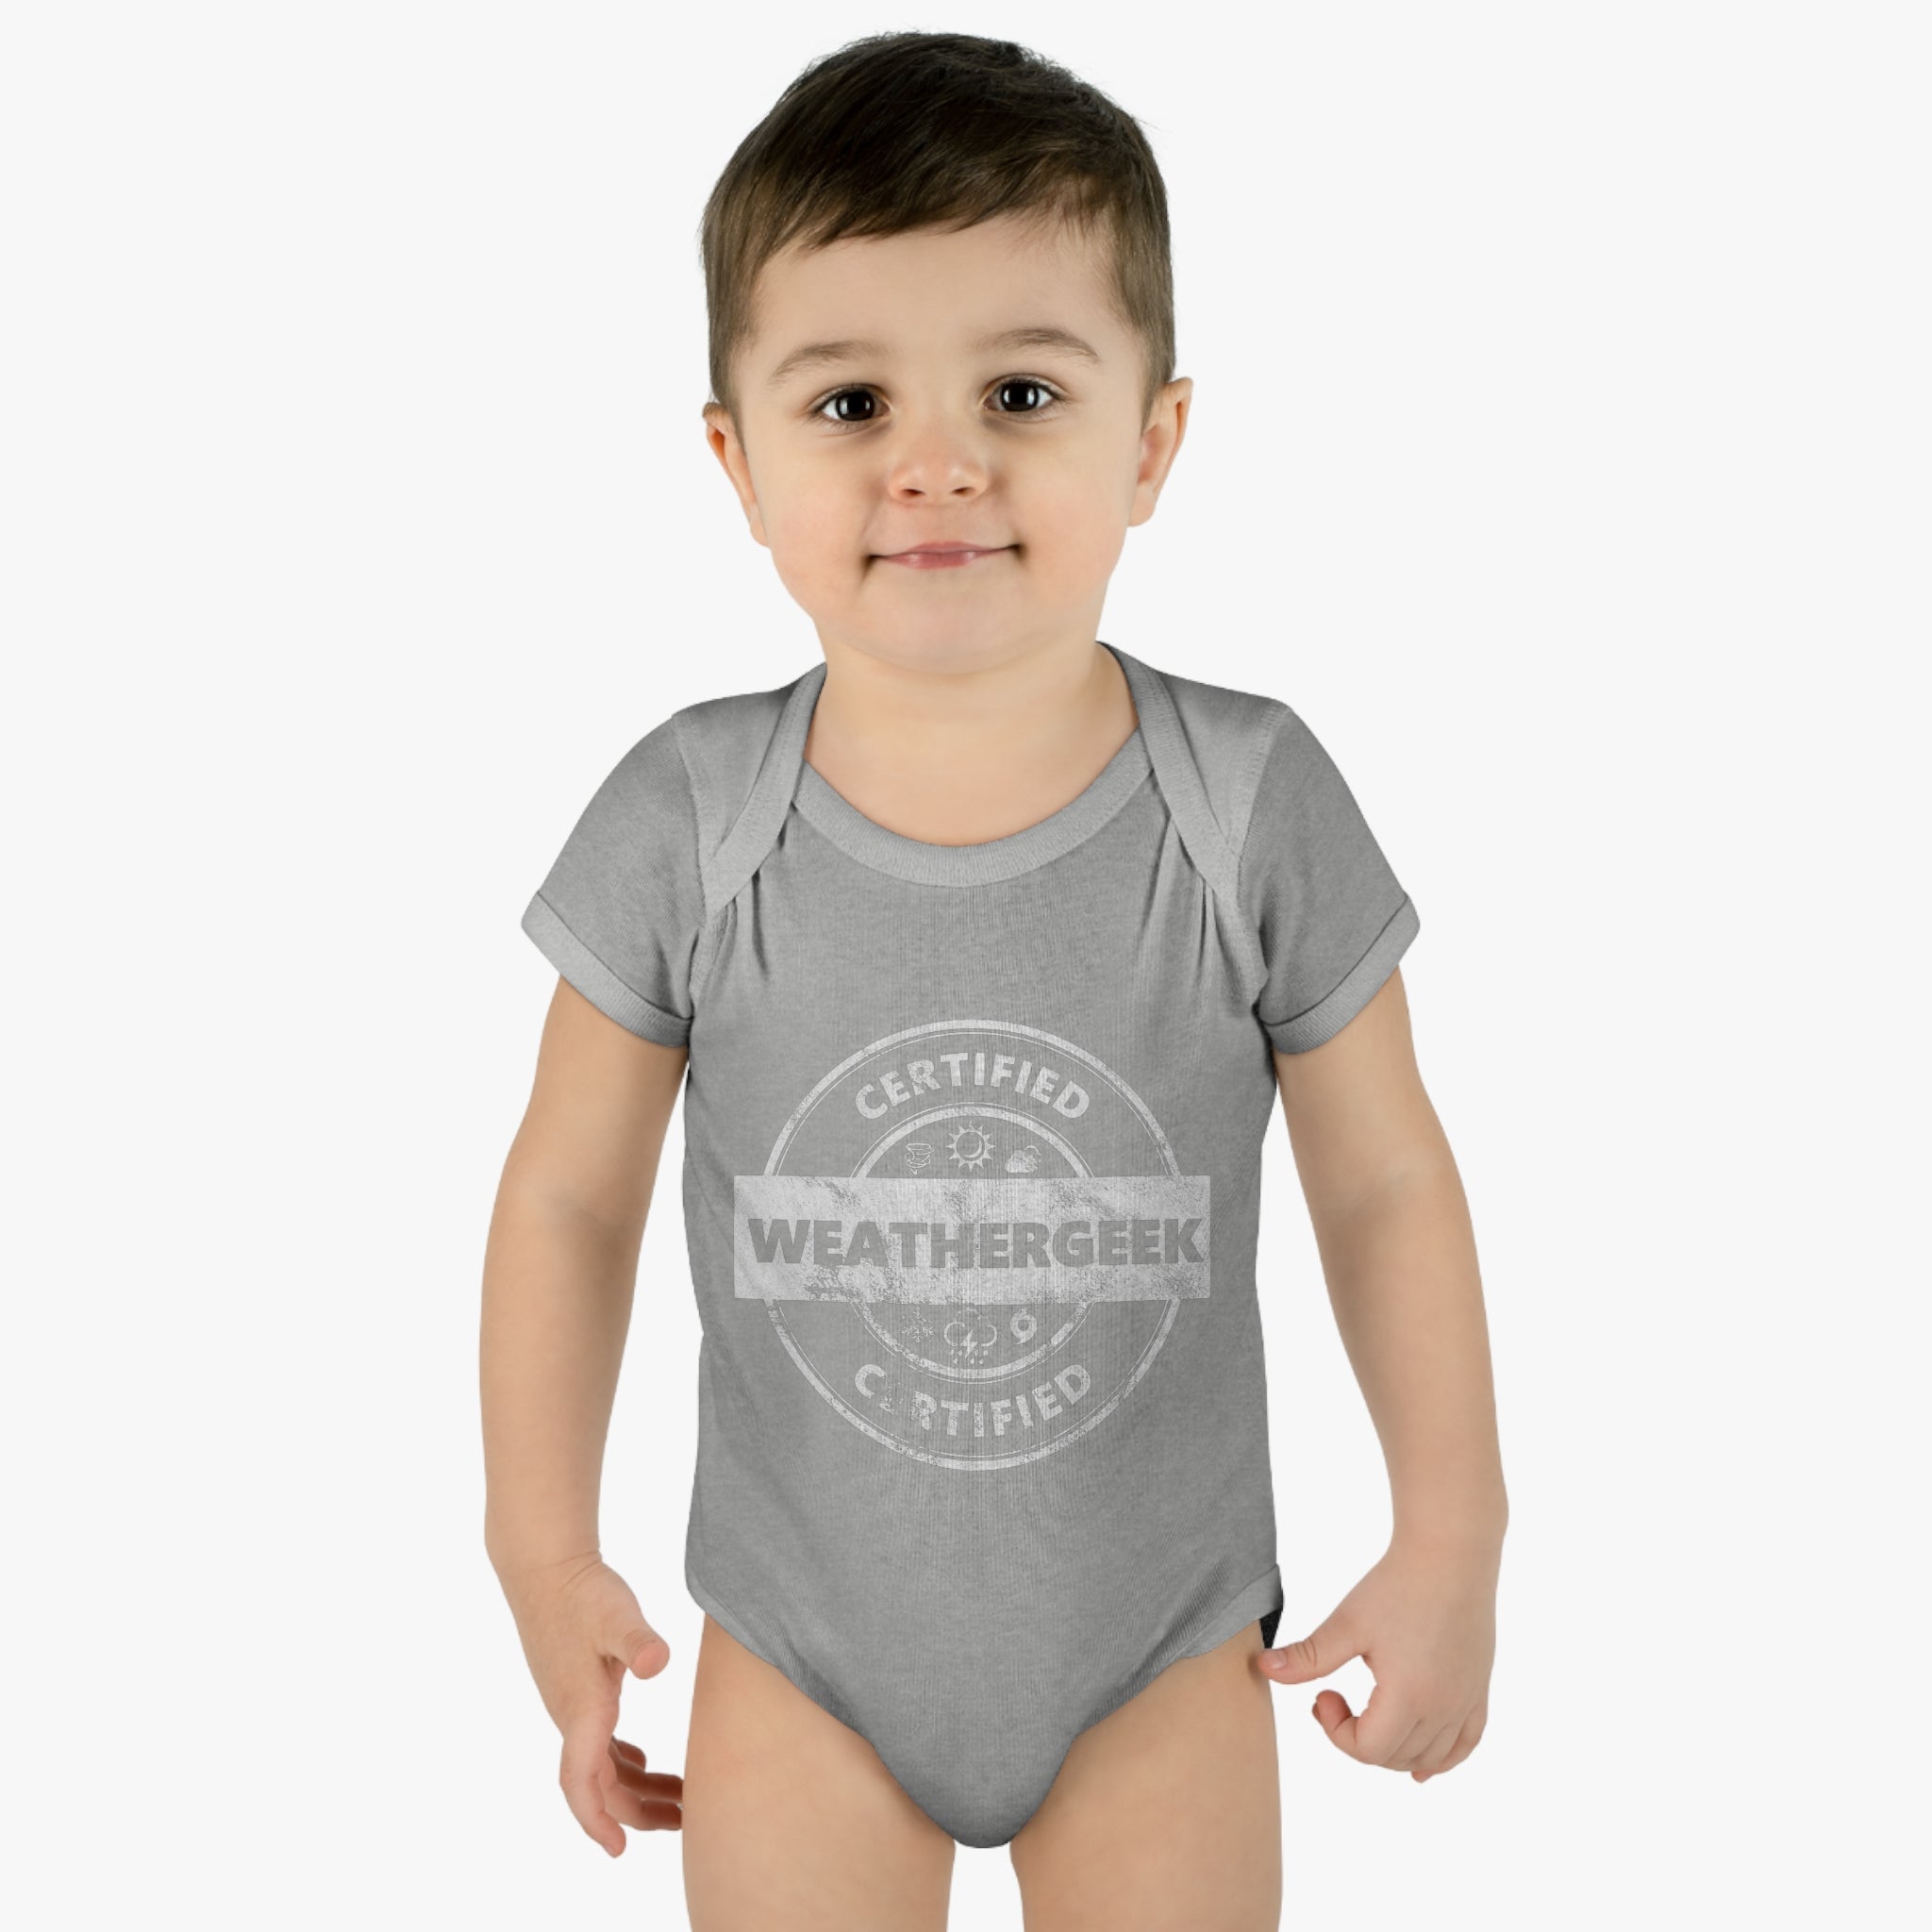 Certified Weathergeek Infant Bodysuit 